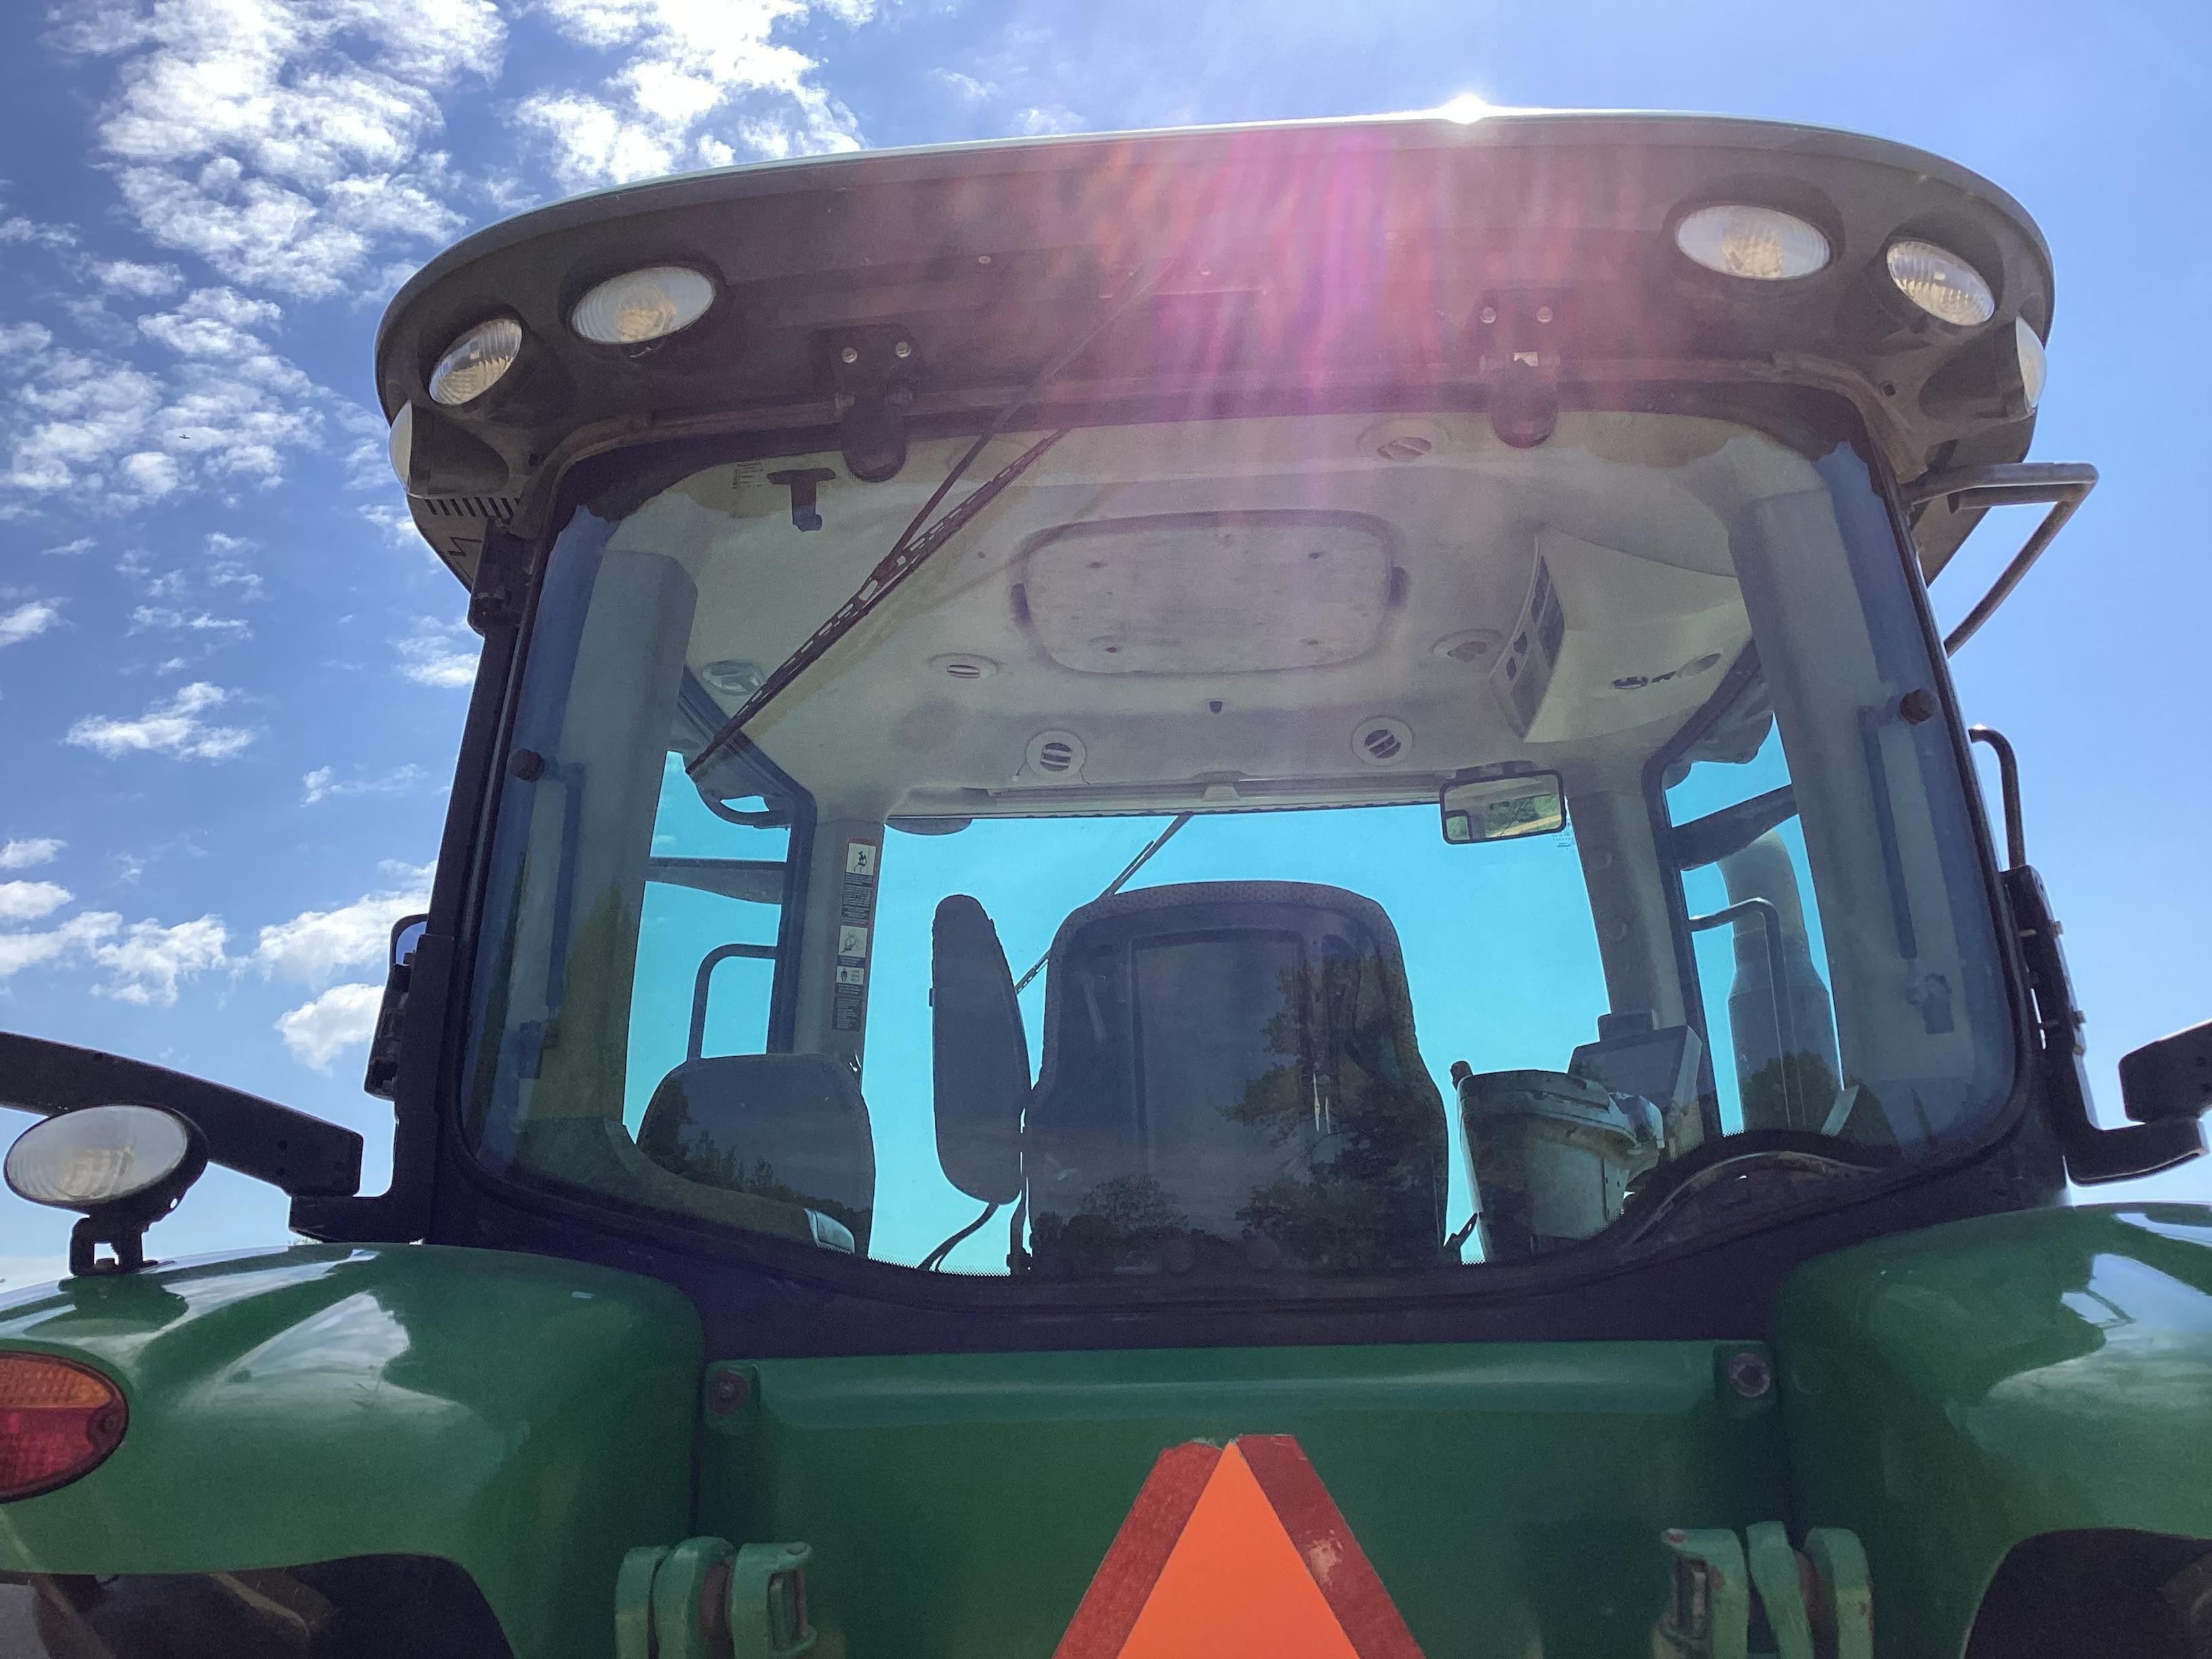 2014 John Deere 7210R Tractor